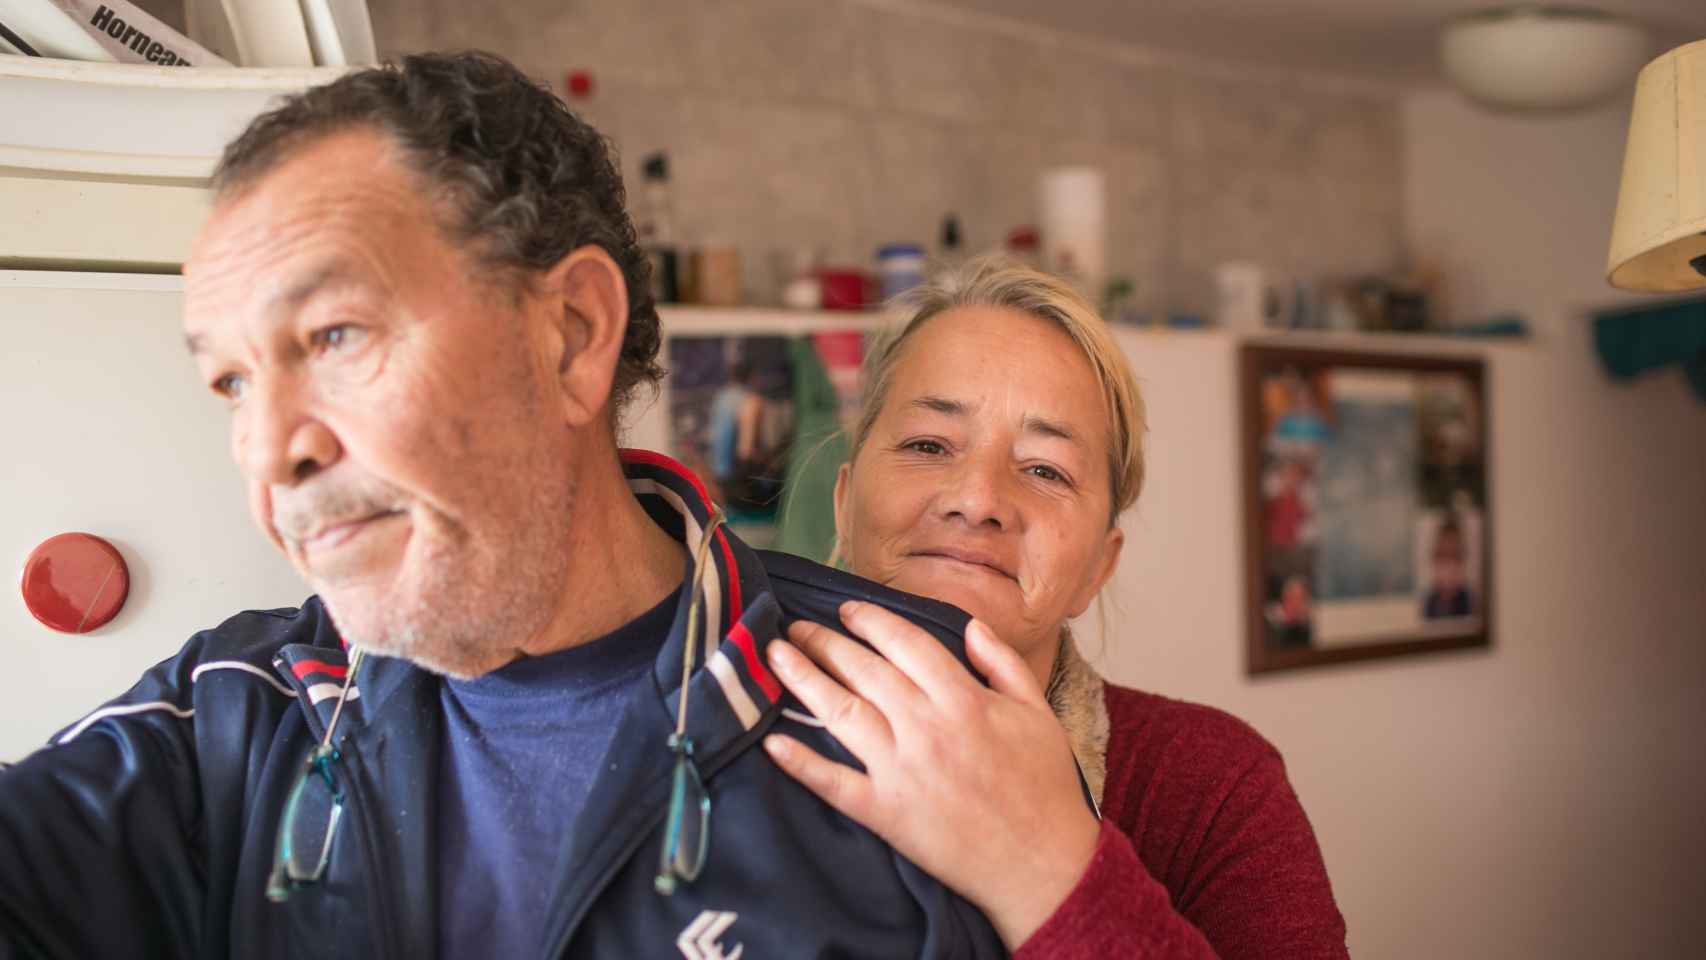 José Luis y Margarita son pareja desde hace tres años. Él, militar retirado, ayuda a ella a combatir sus brotes suicidas.